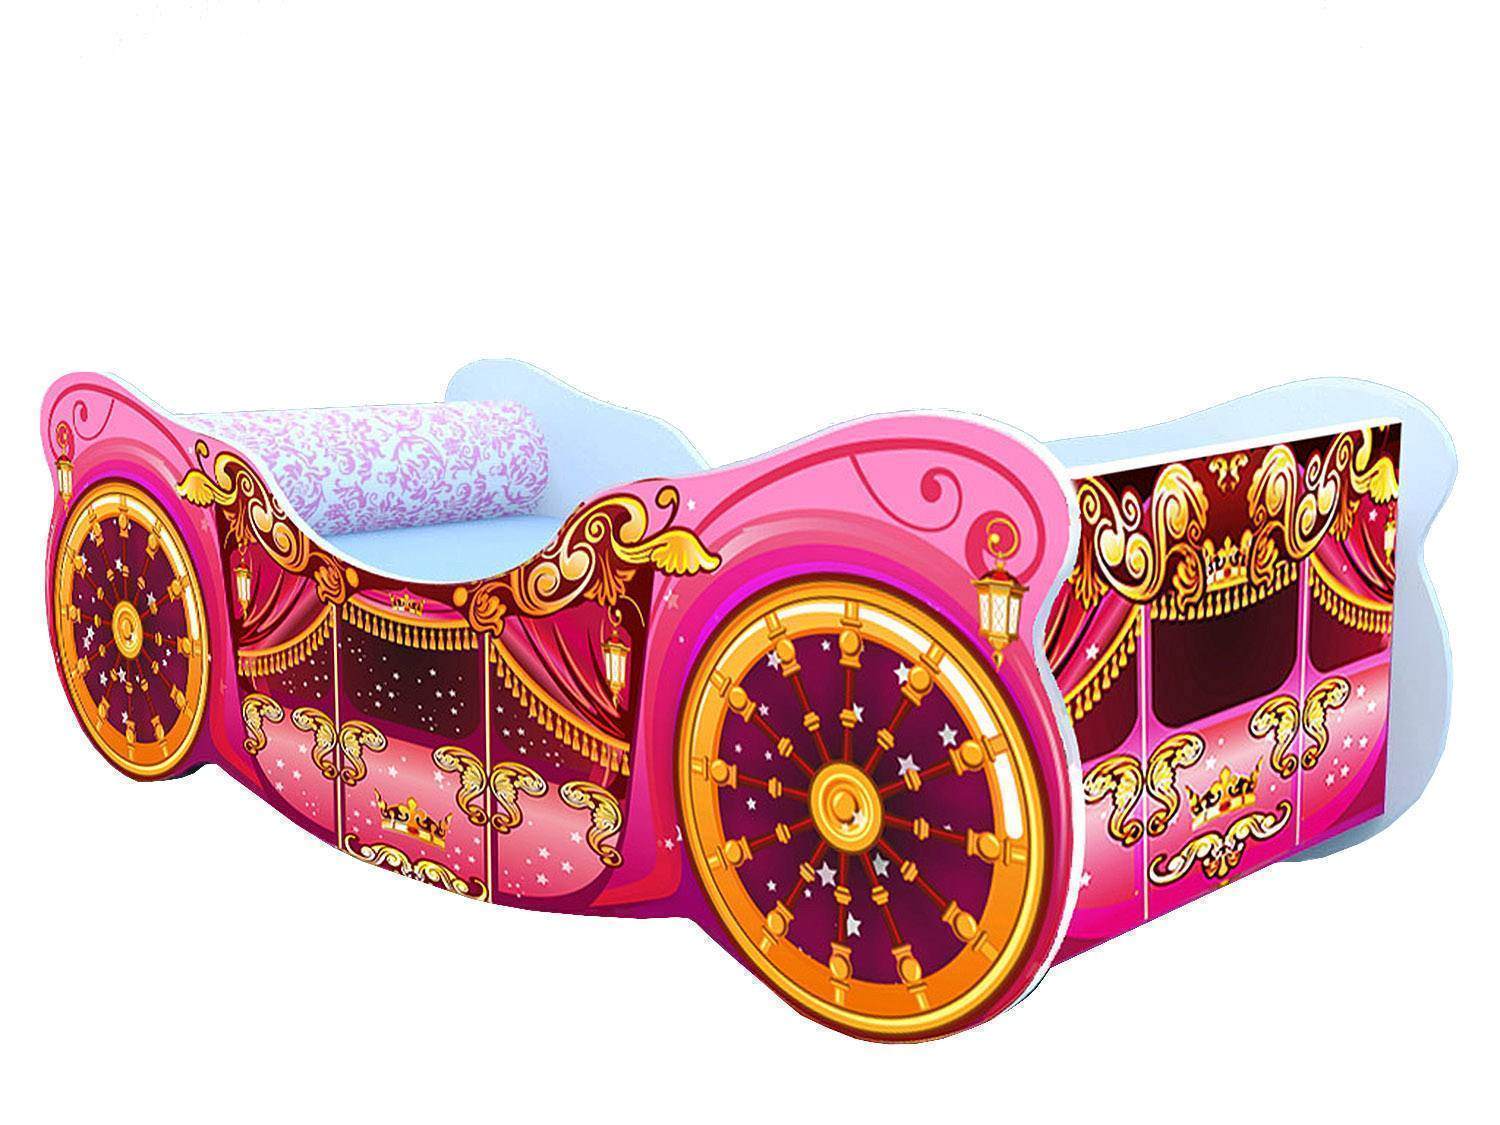 кровать карета для принцессы